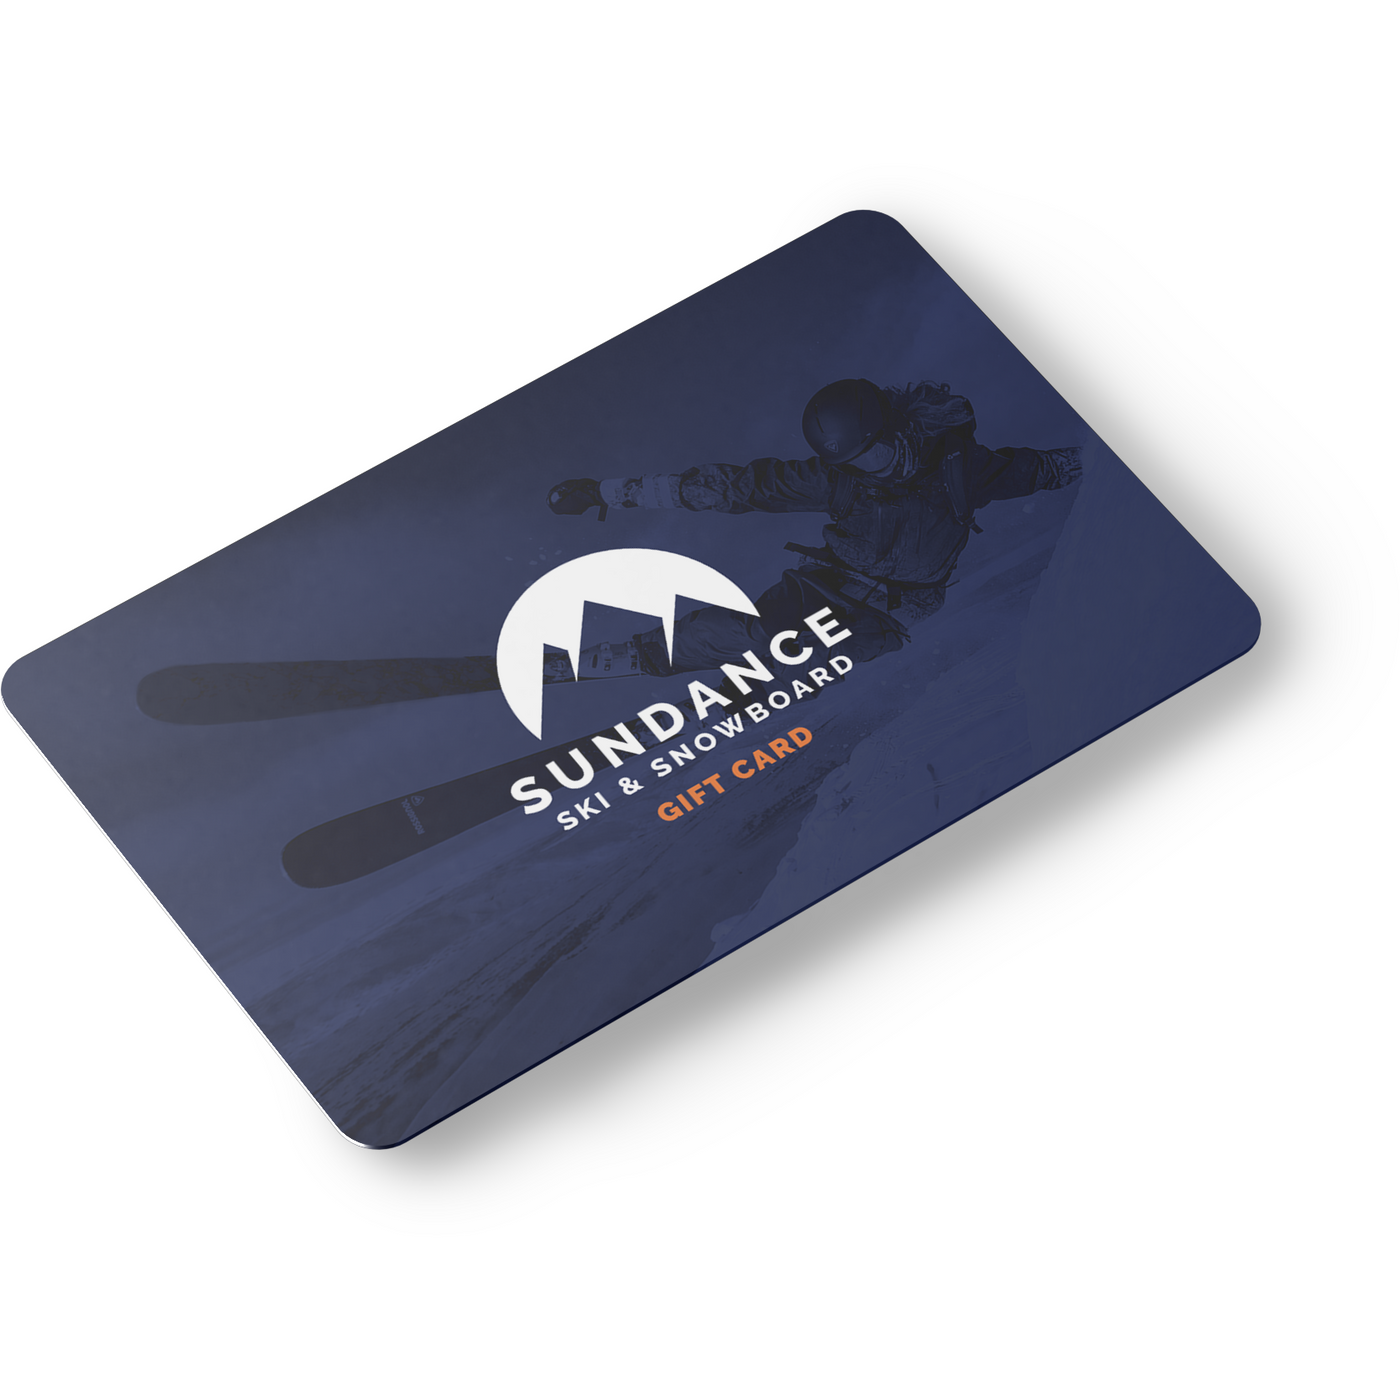 Sundance Ski & Board Shop Gift Card